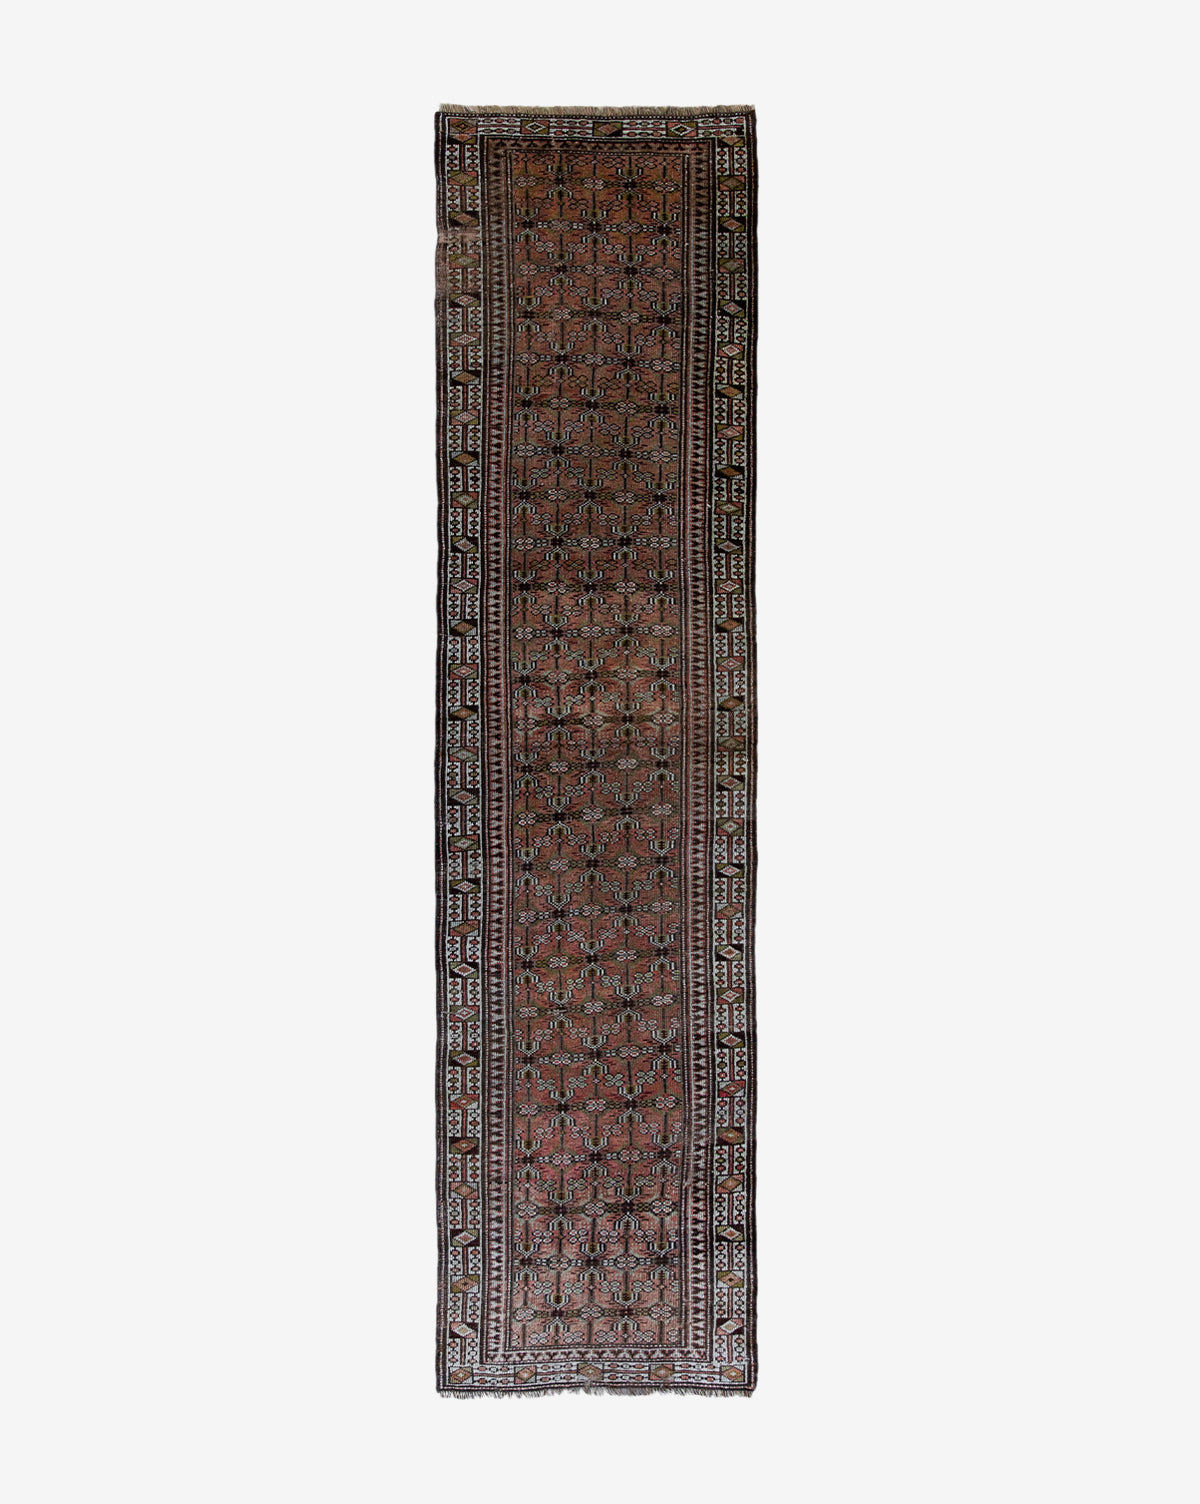 Eliko Oriental Rugs, Vintage Rug No. 133